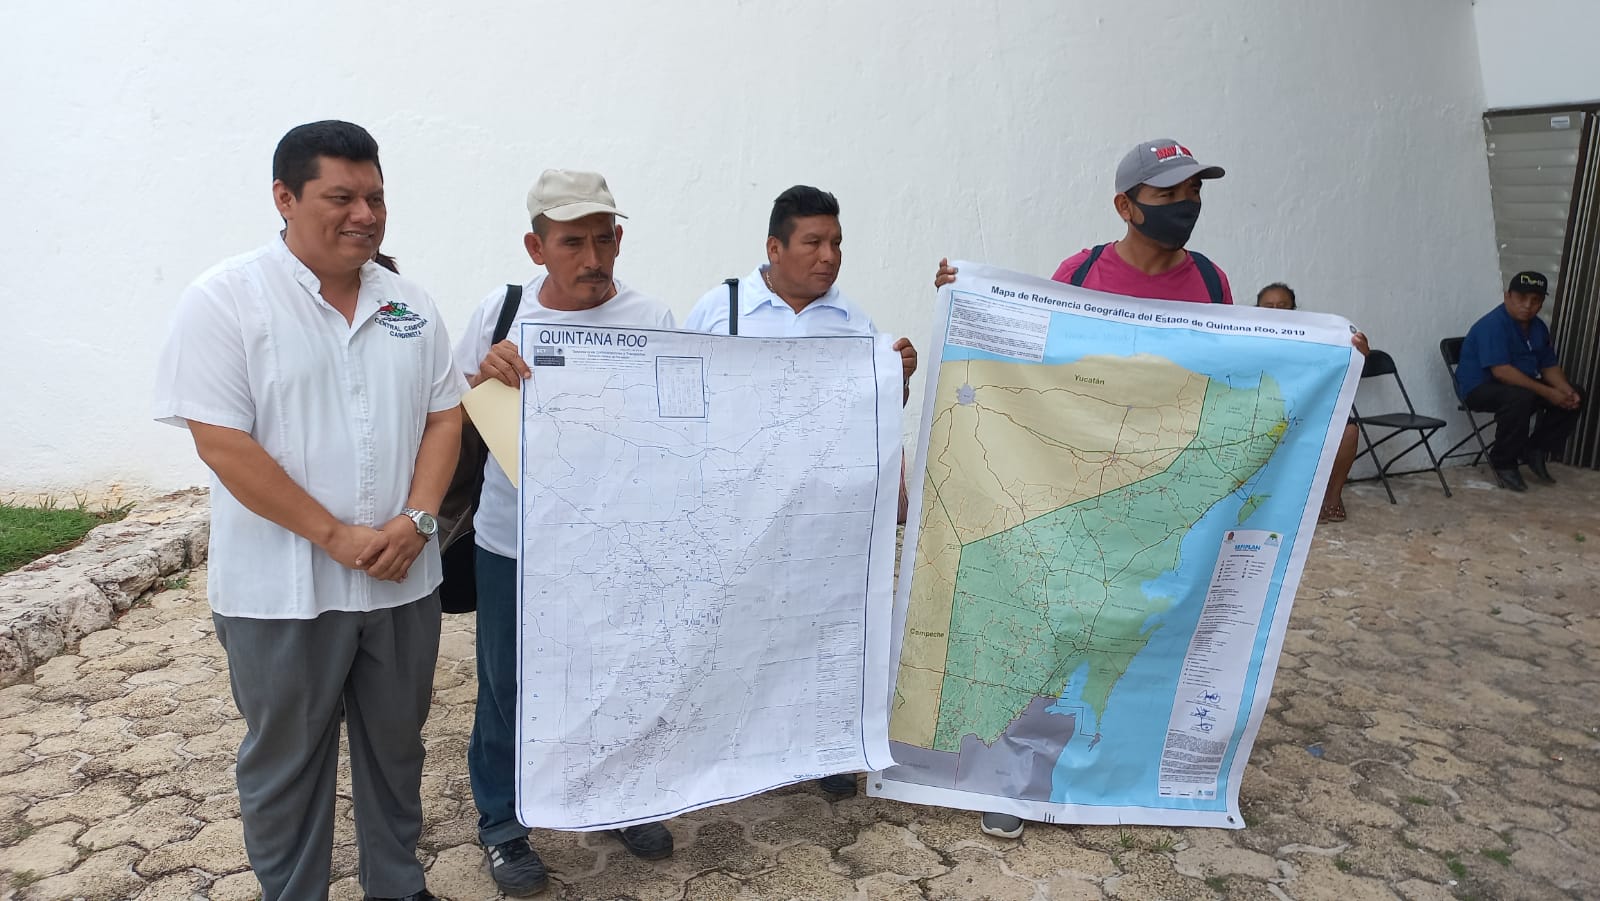 Buscarían alianza entre Othón P. Blanco y Calakmul para atender a comunidades afectadas por lío limítrofe